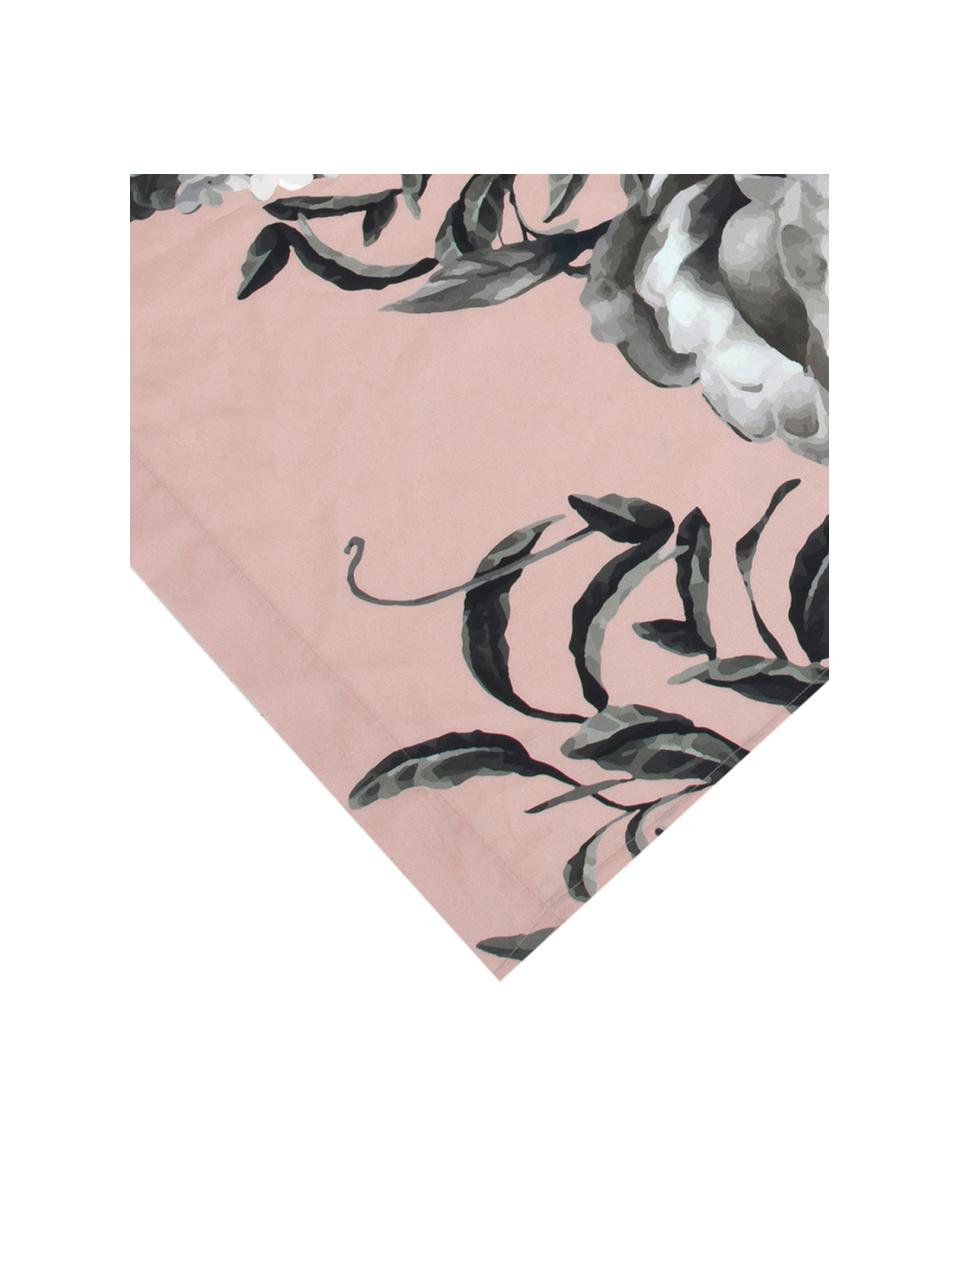 Parure letto in raso di cotone Blossom, Rosa, 240 x 300 cm + 2 federe 50 x 80 cm